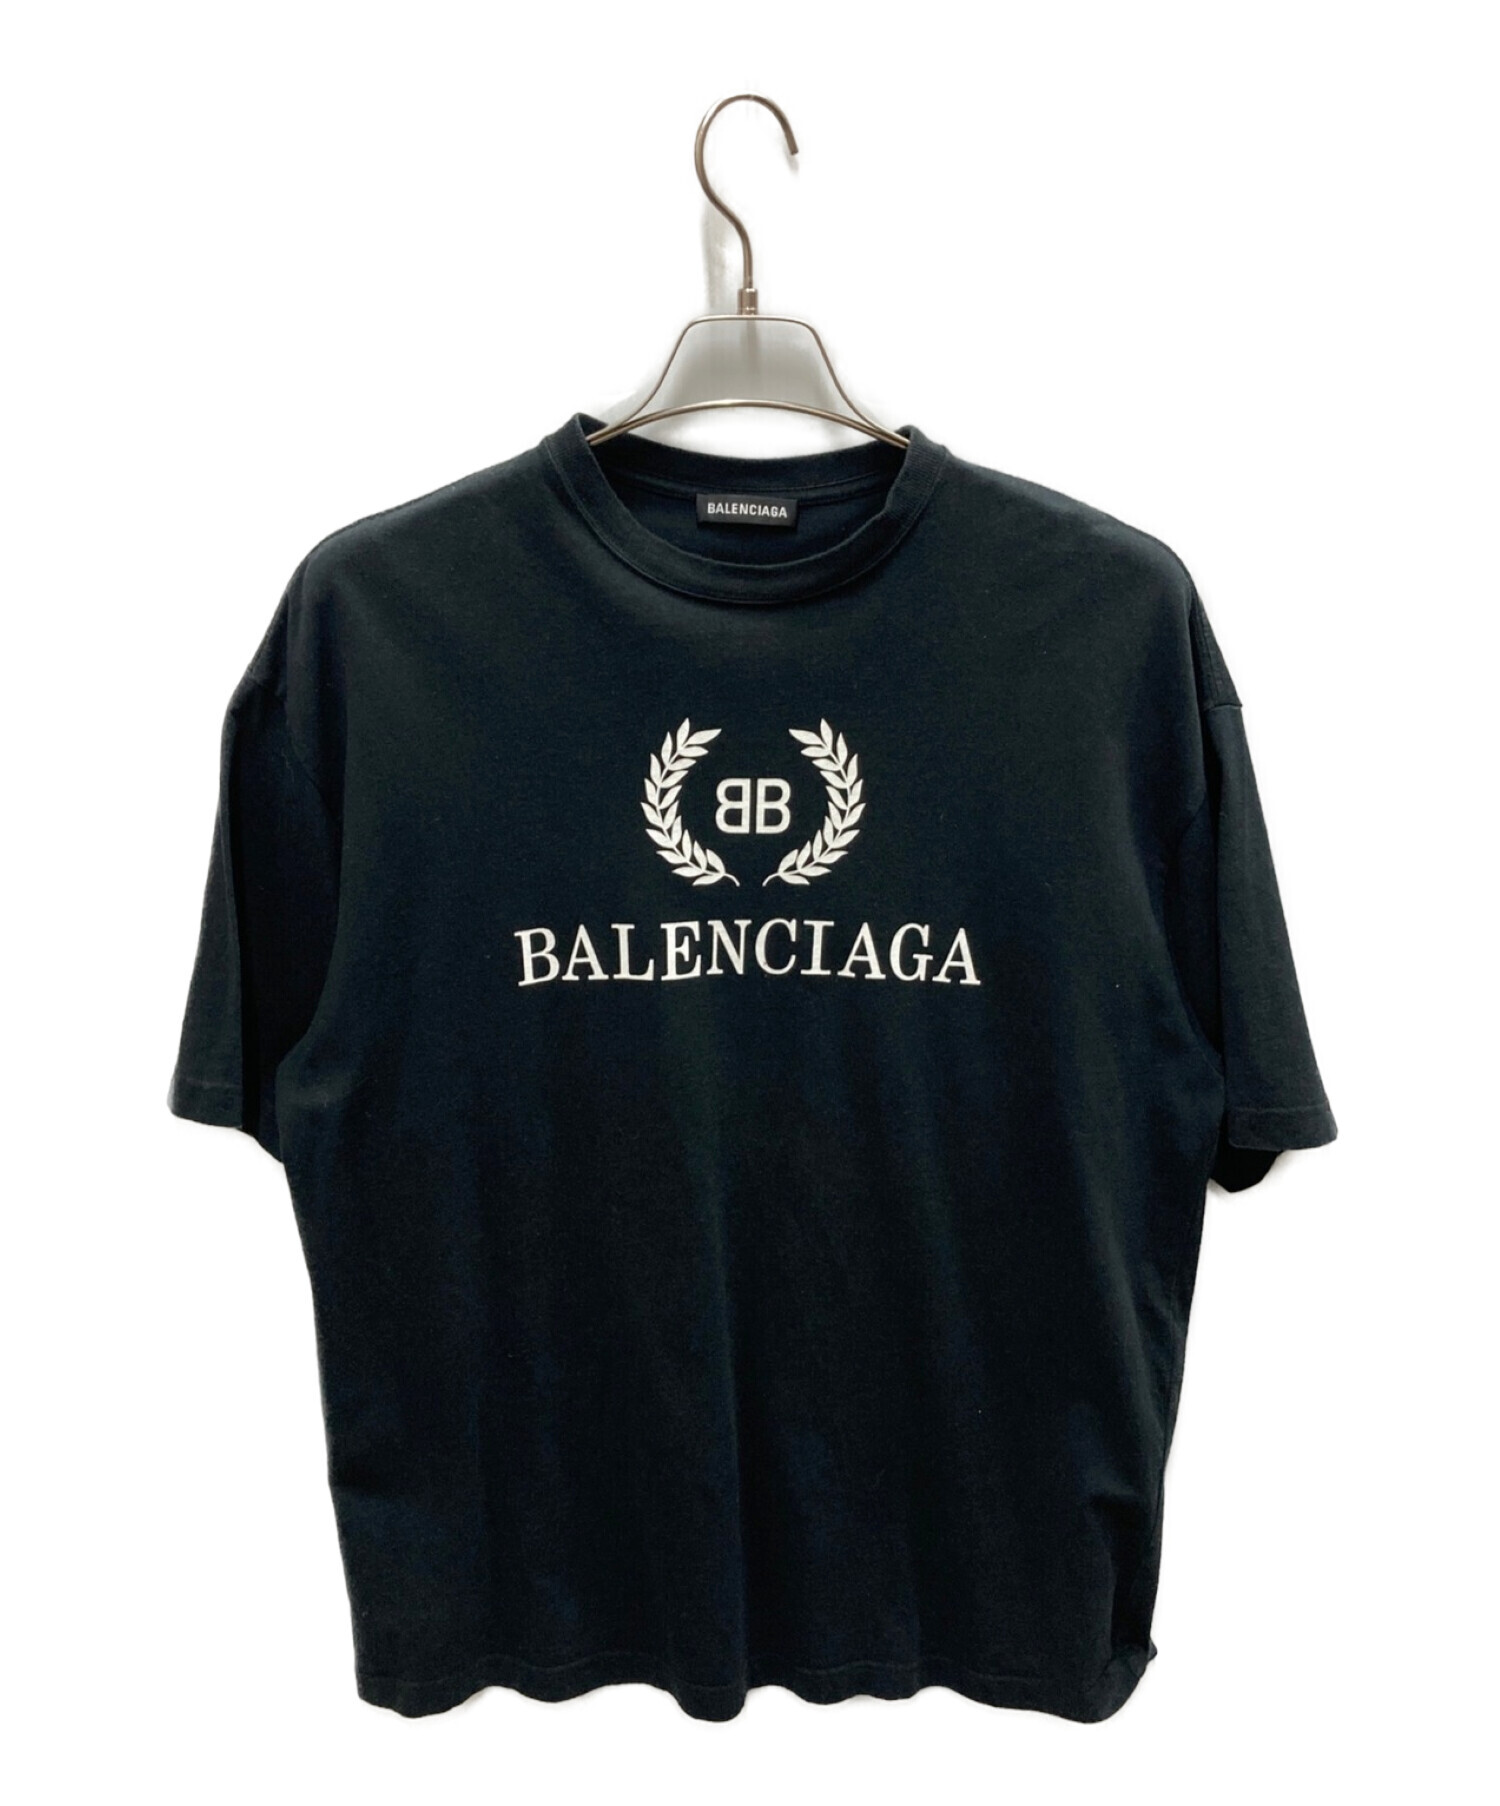 バレンシアガ BBロゴプリントTシャツ XS - トップス